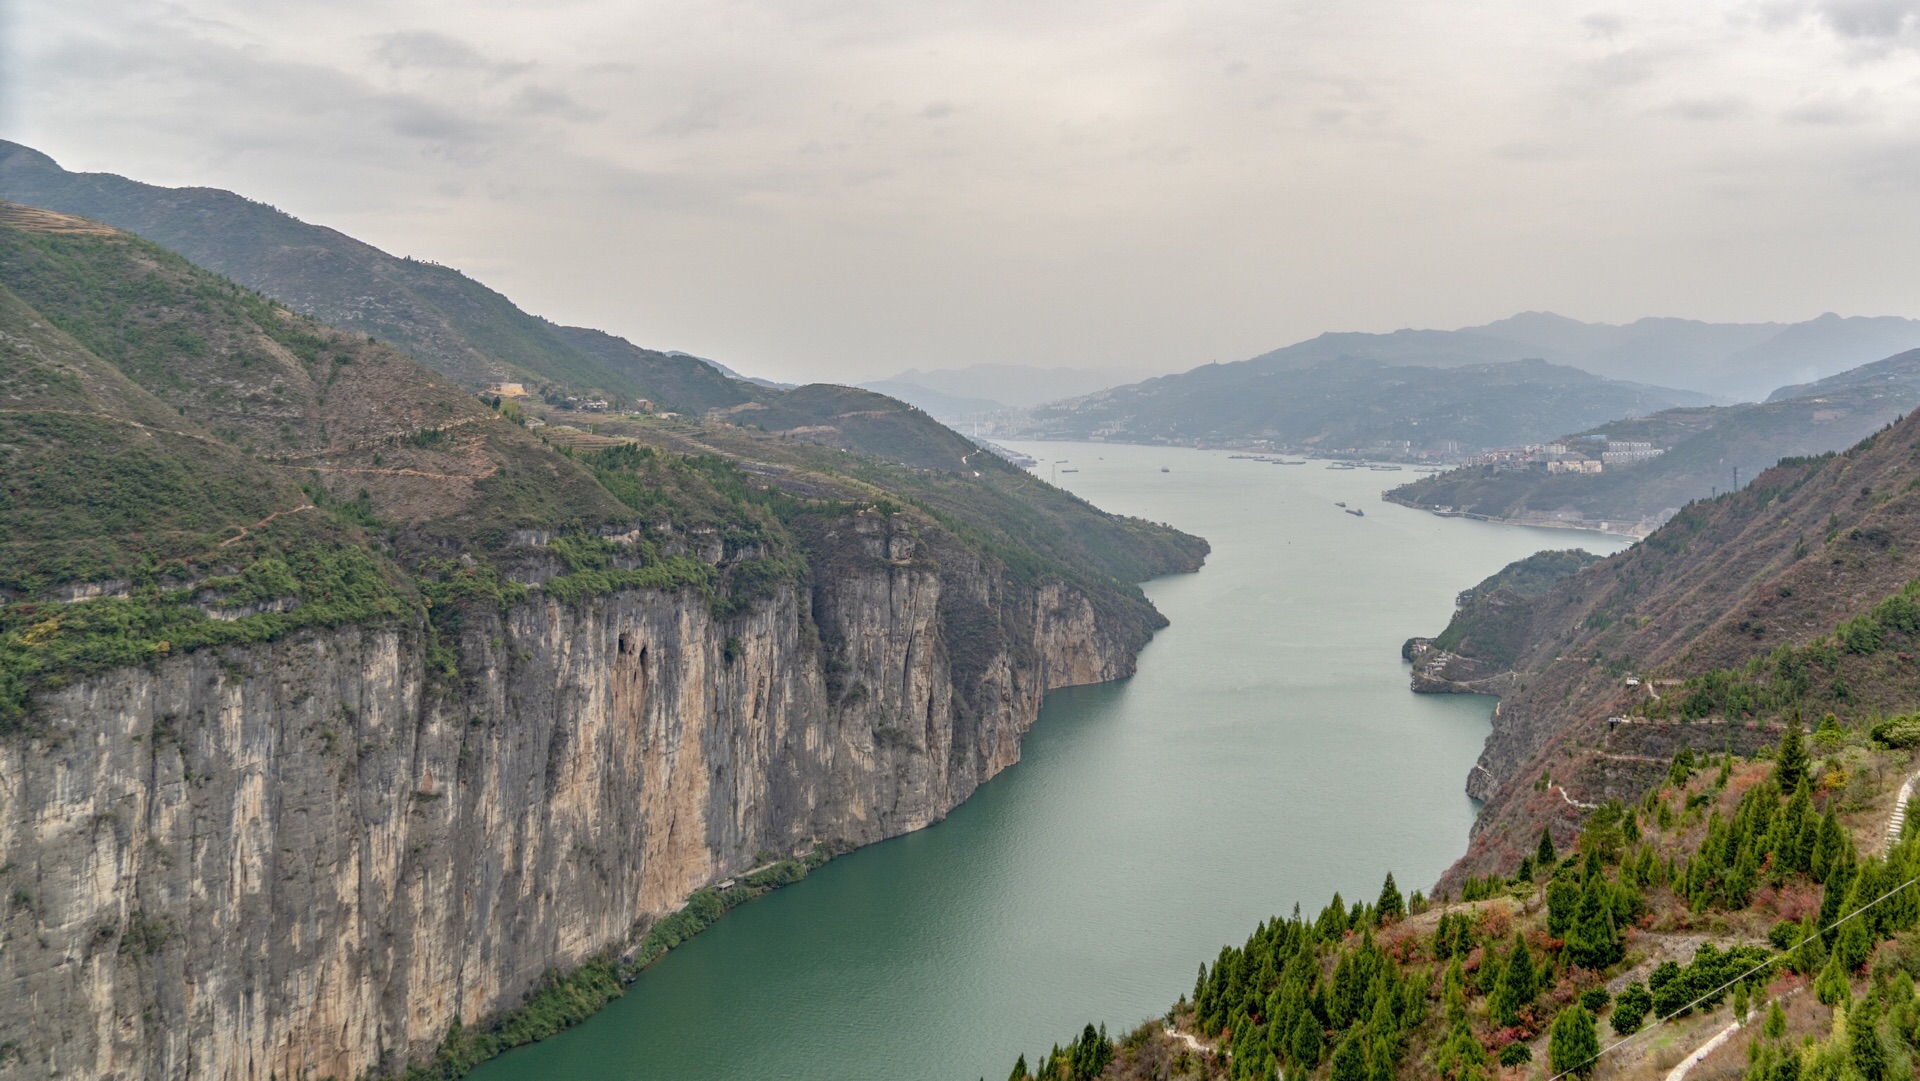 美景寻踪 | 万里长江上的美丽画廊——长江三峡